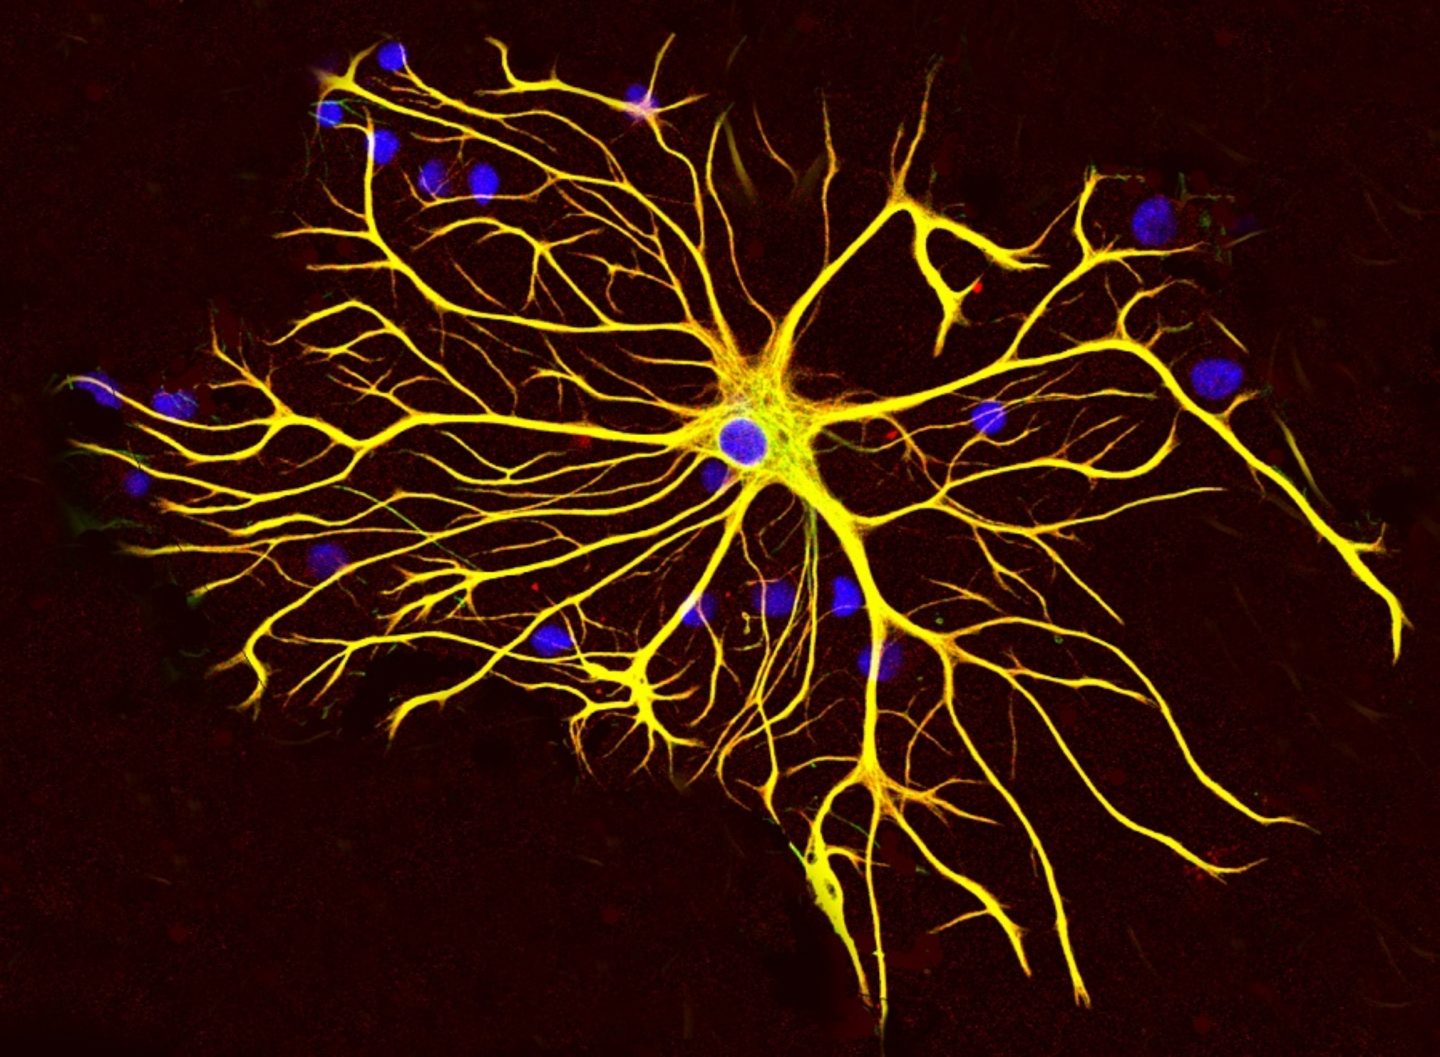 كيف يتم ترميم النسيج العصبي بعد الاذية ؟ و ما هو دور الخلايا النجمية ؟